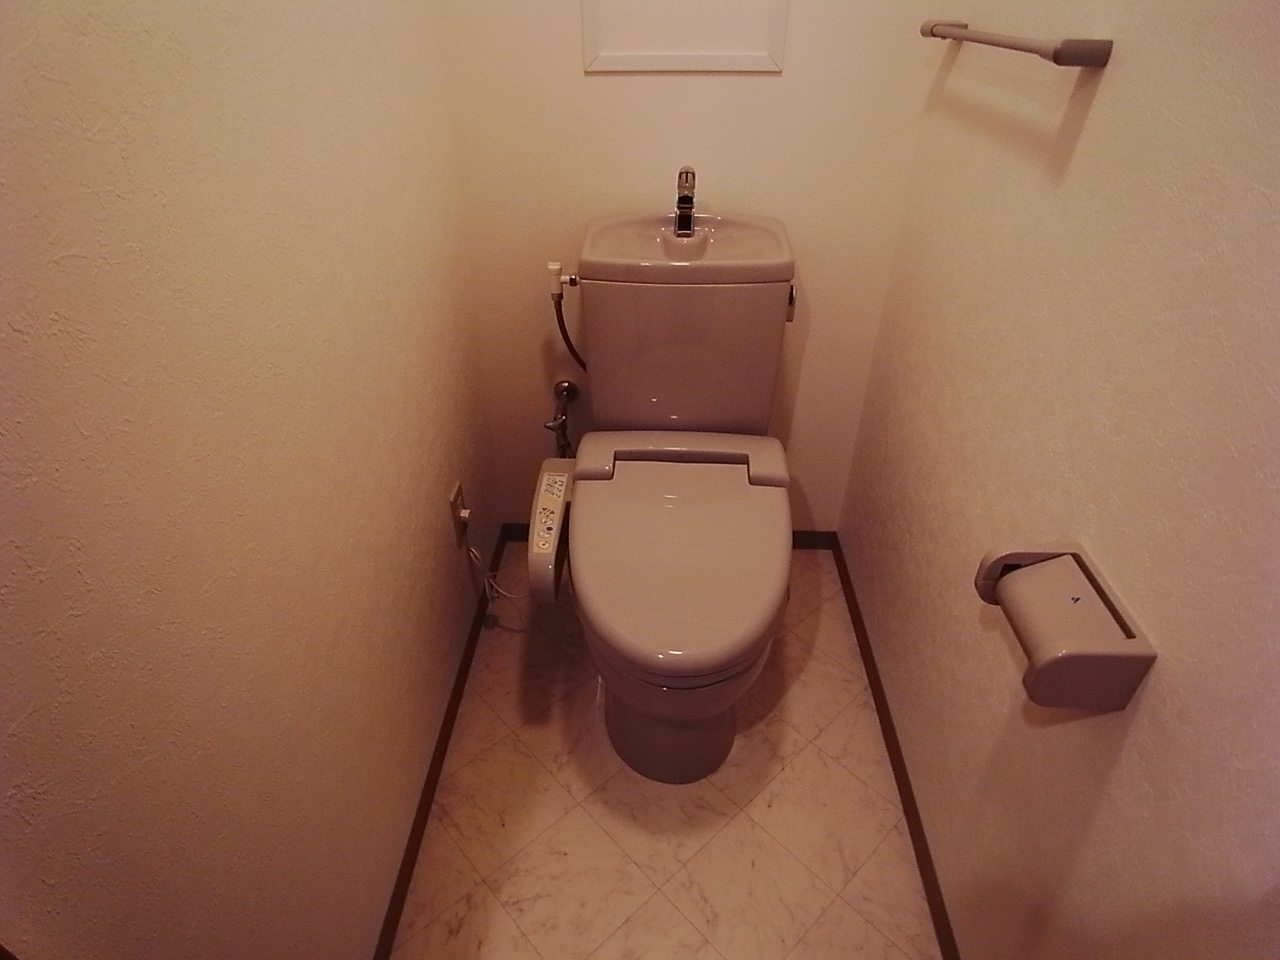 Toilet. With warm water washing toilet seat toilet